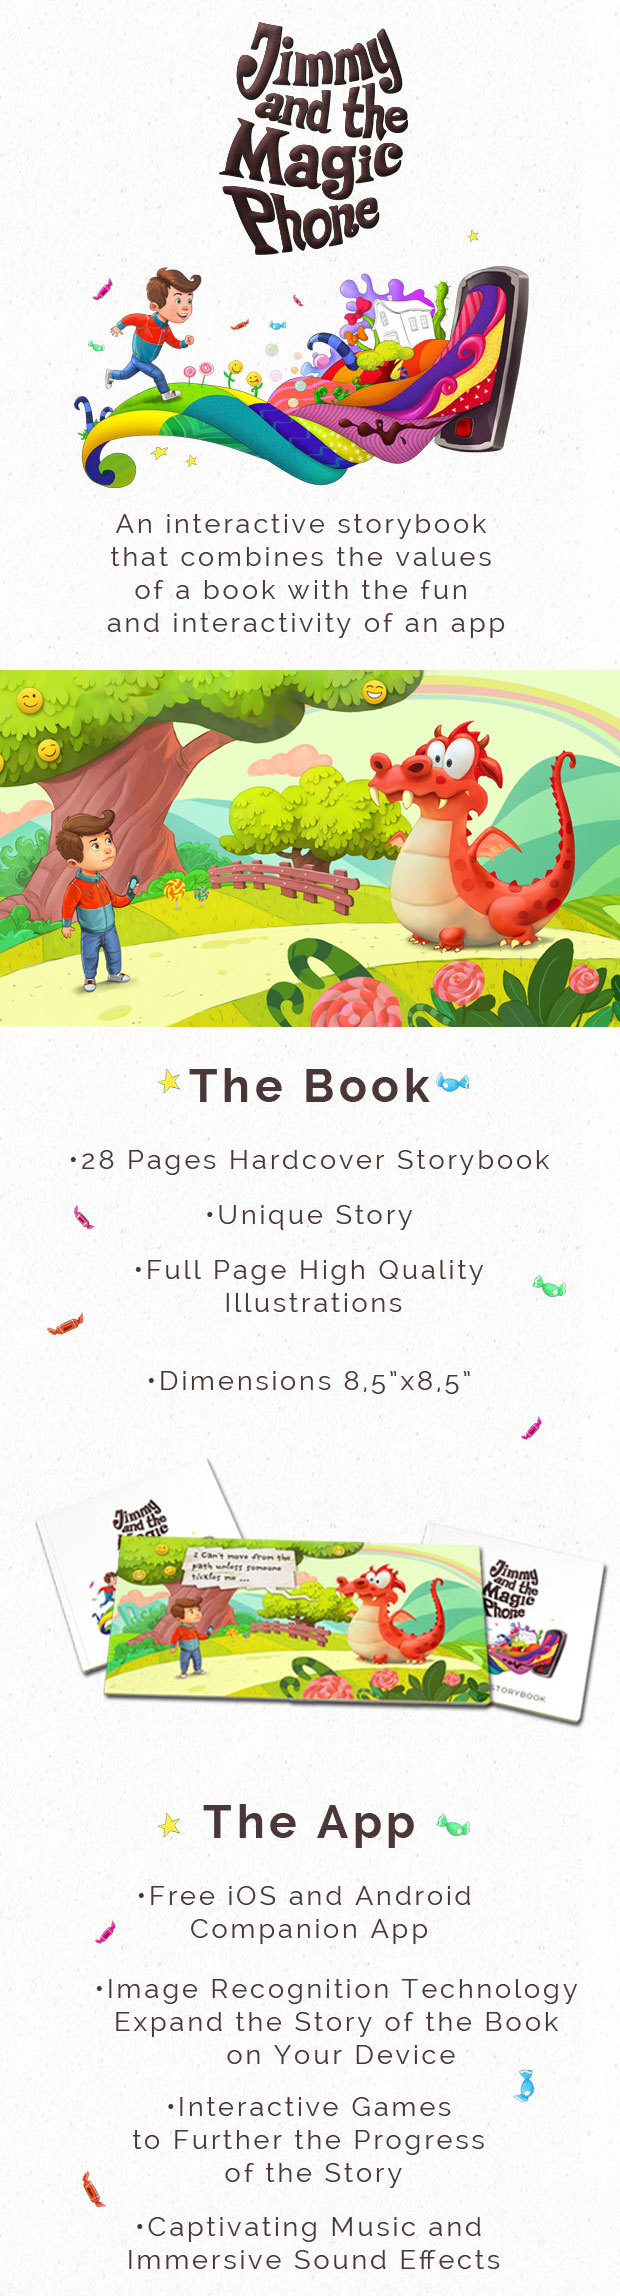 Ένα διαδραστικό παραμύθι που συνδυάζει τις αξίες ενός βιβλίου και την διαδραστικότητα ενός app!